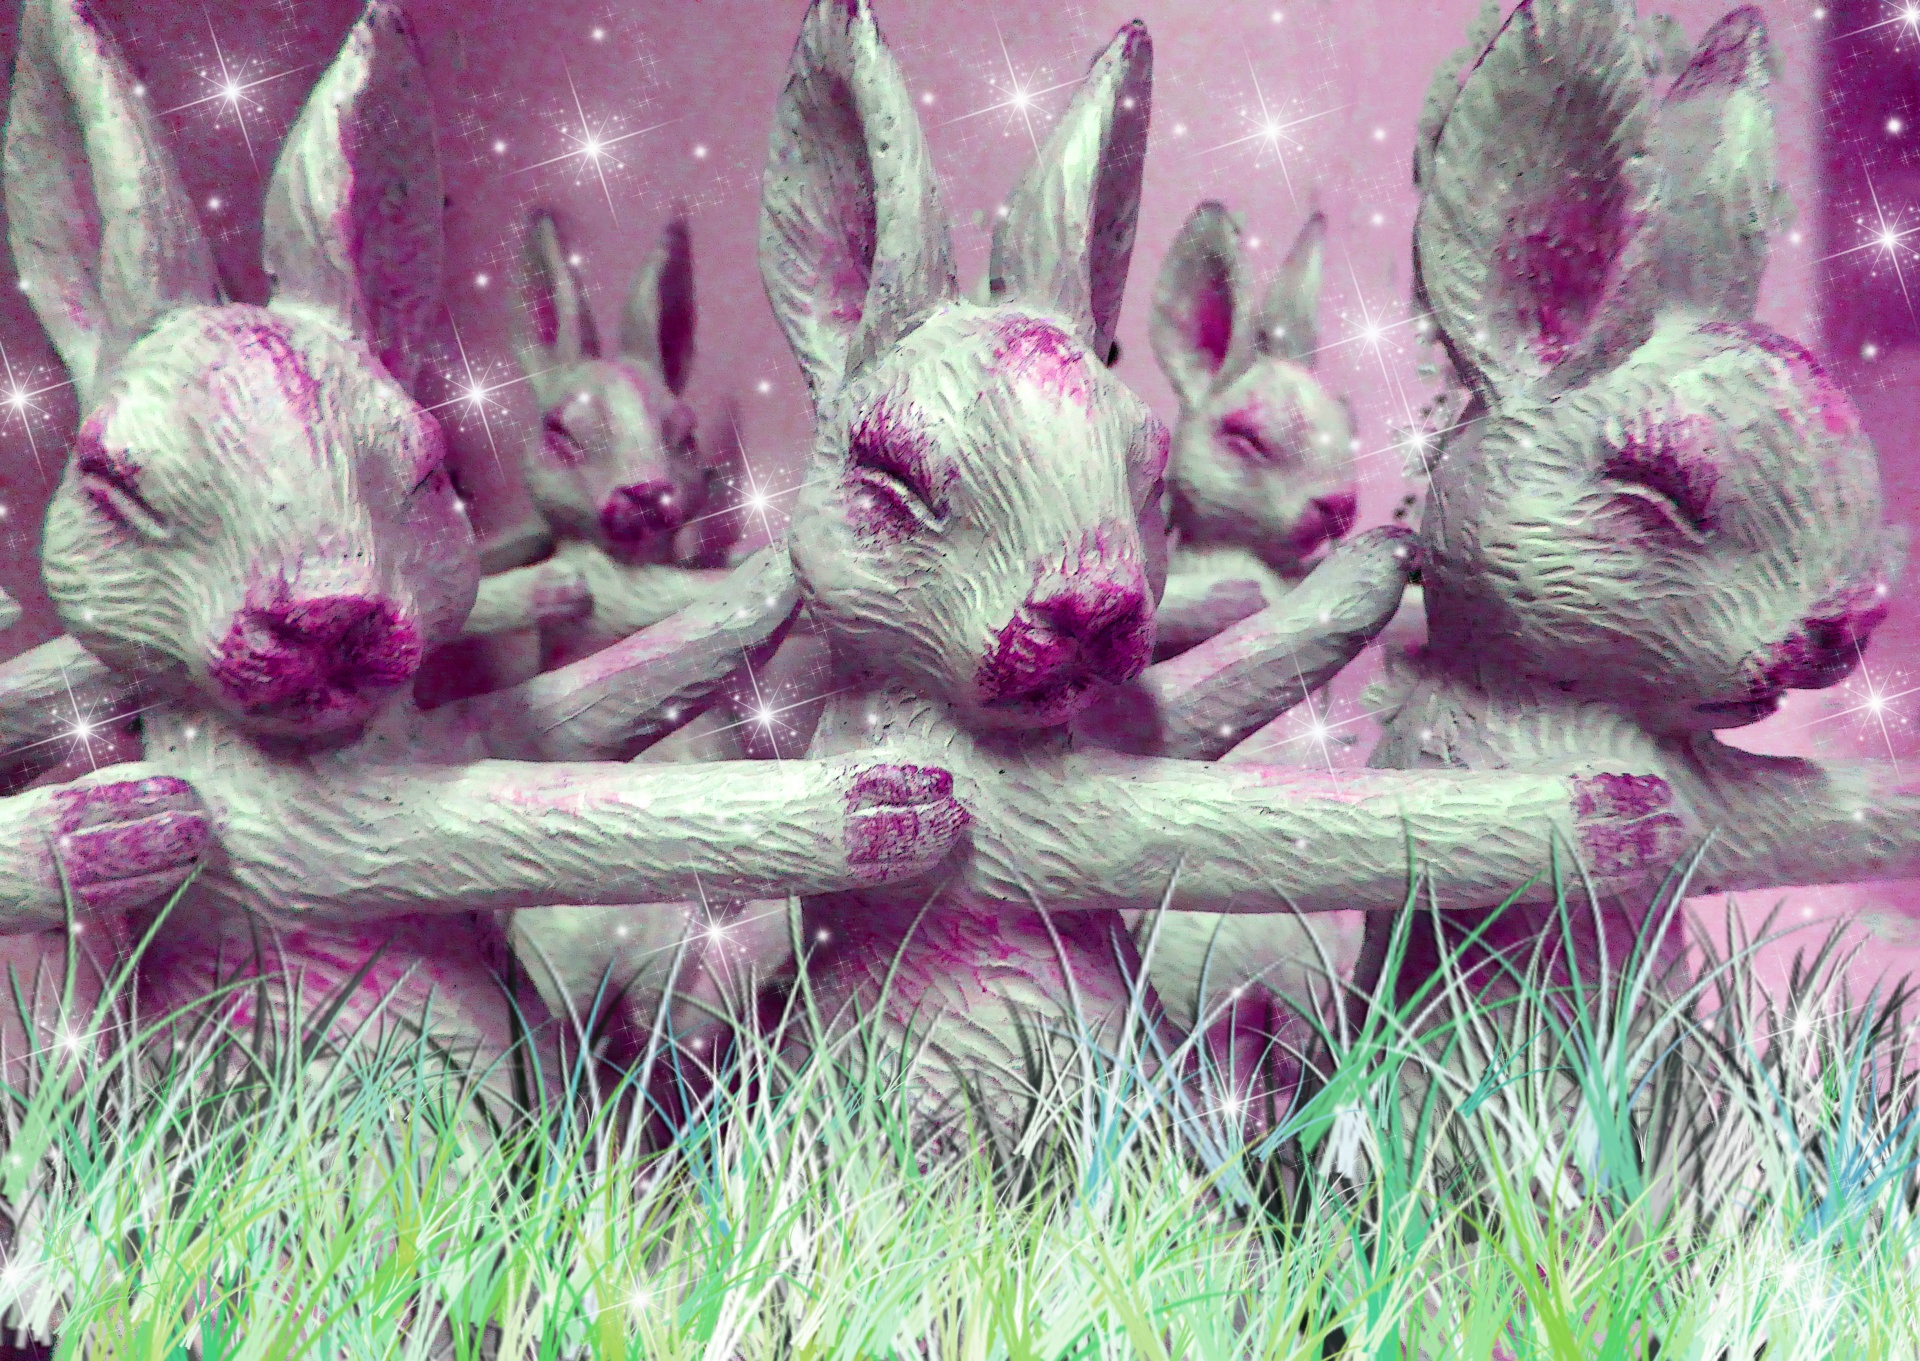 Los conejos de color rosa en la hierba